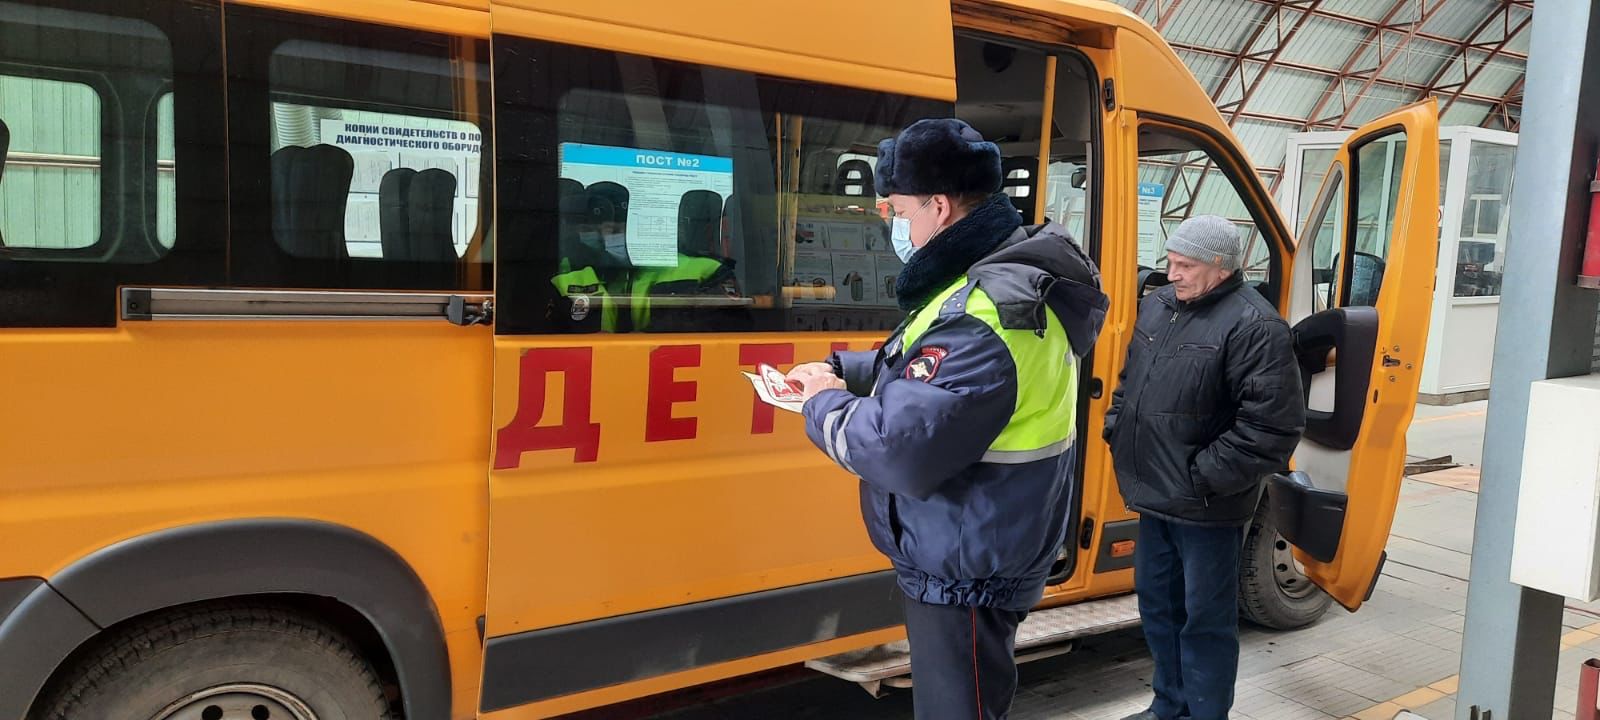 Техосмотр школьного автобуса. Школьные автобусы в России. Школа автобус. Инспектор автобуса.